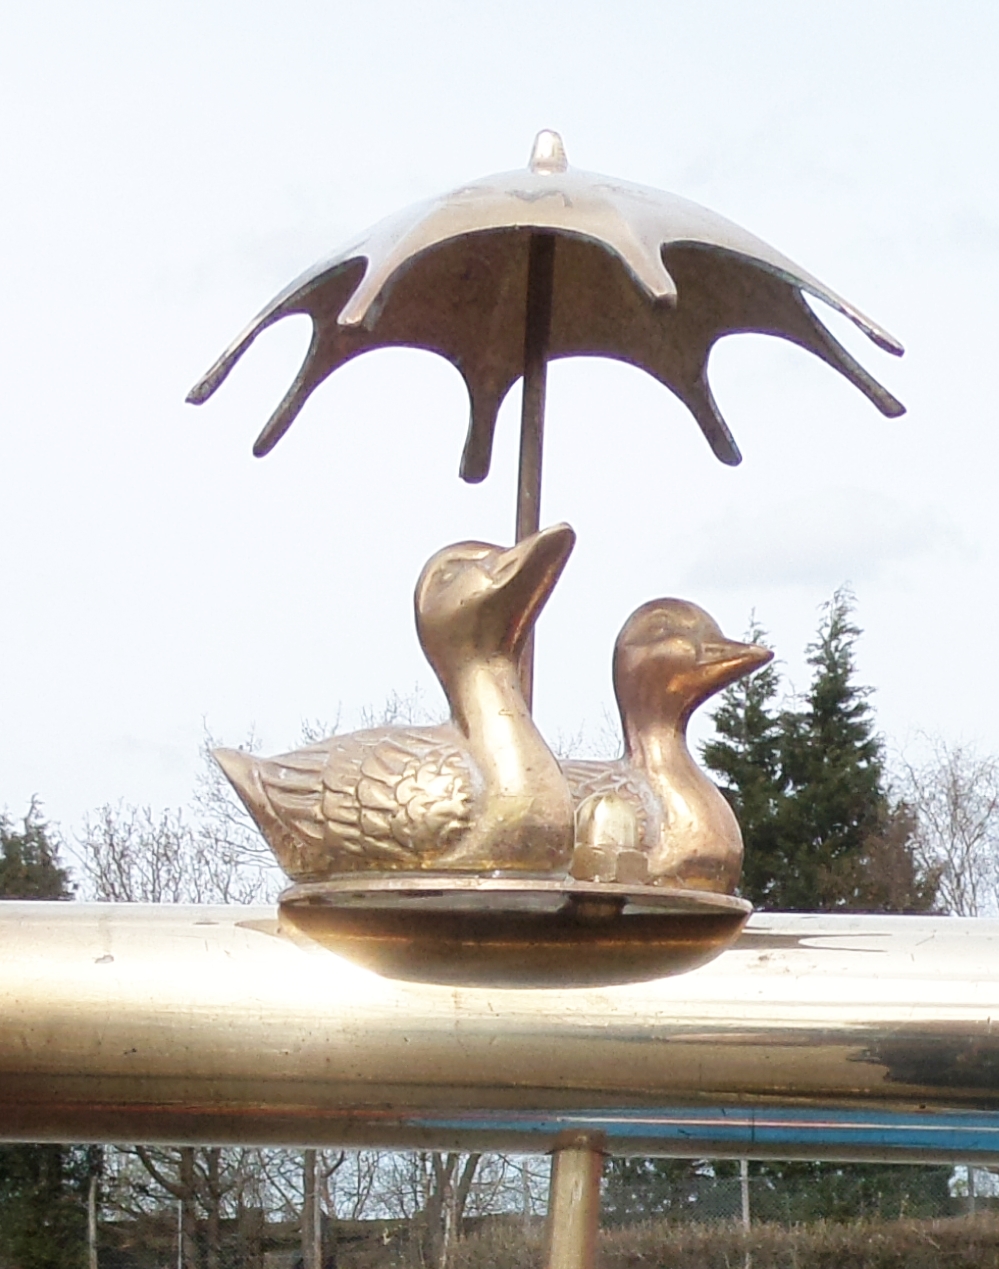 Ducks under Umbrella Tiller Pin